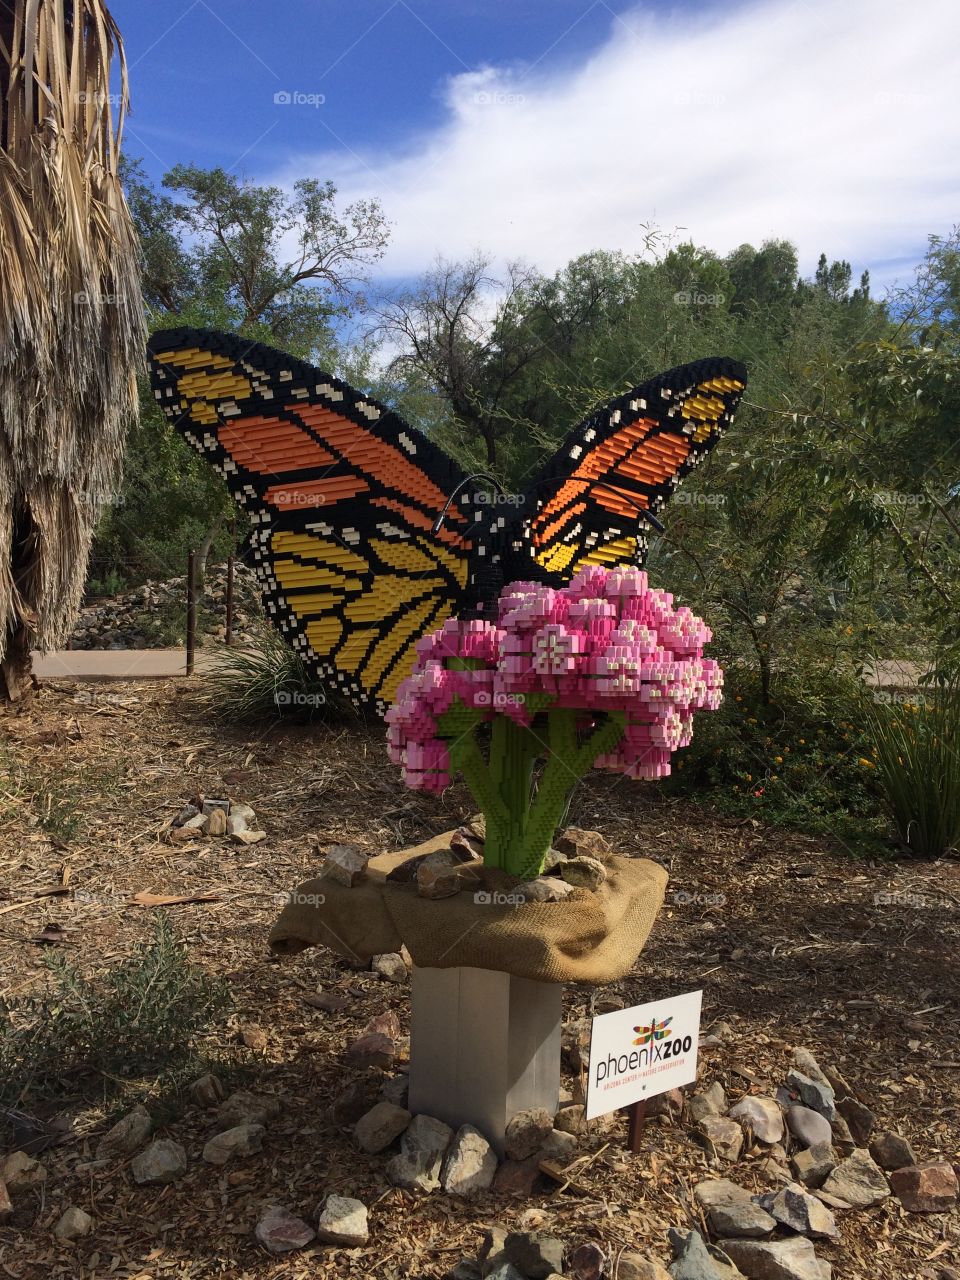 Butterfly Lego sculpture.